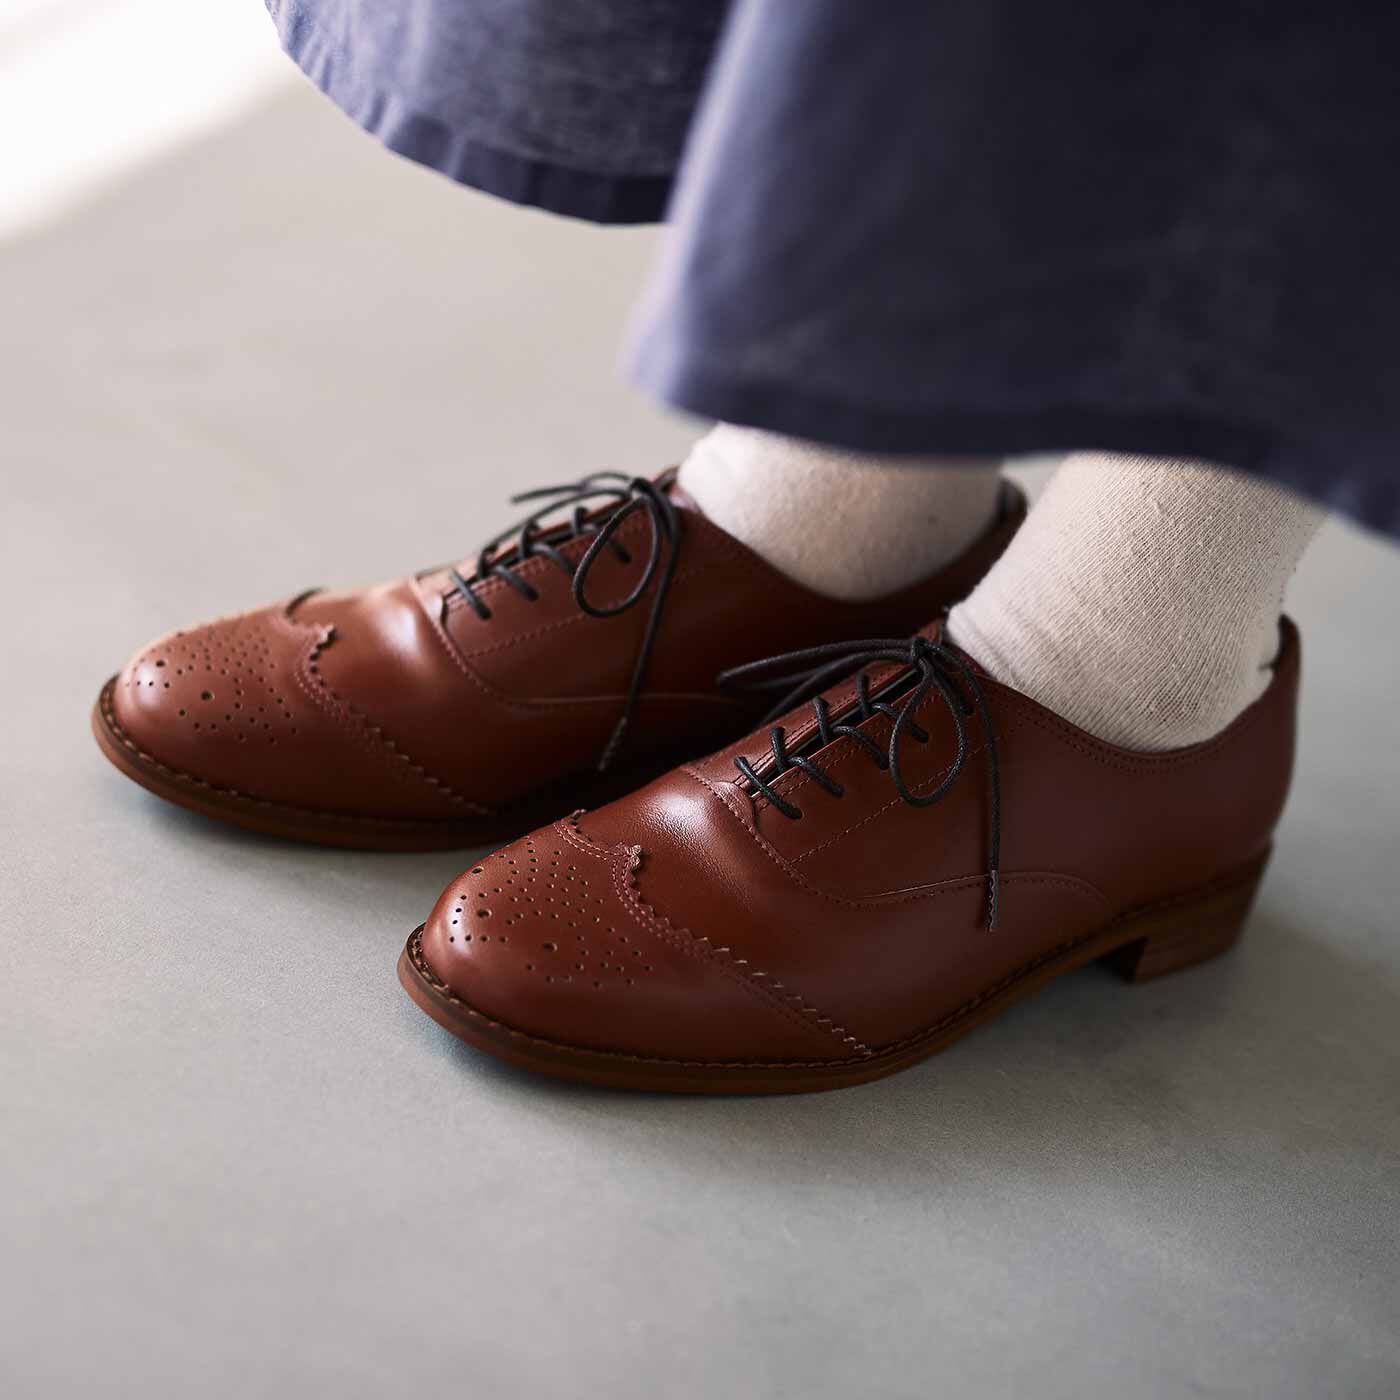 ＆Stories|長田靴職人が叶えた 本革ハーフウィングチップ〈マロン〉[本革 靴：日本製]|かっちりとしたピース付きソールはクッション性に優れ、ほどよいヒール高でパンツもスカートもバランスよく着こなせます。